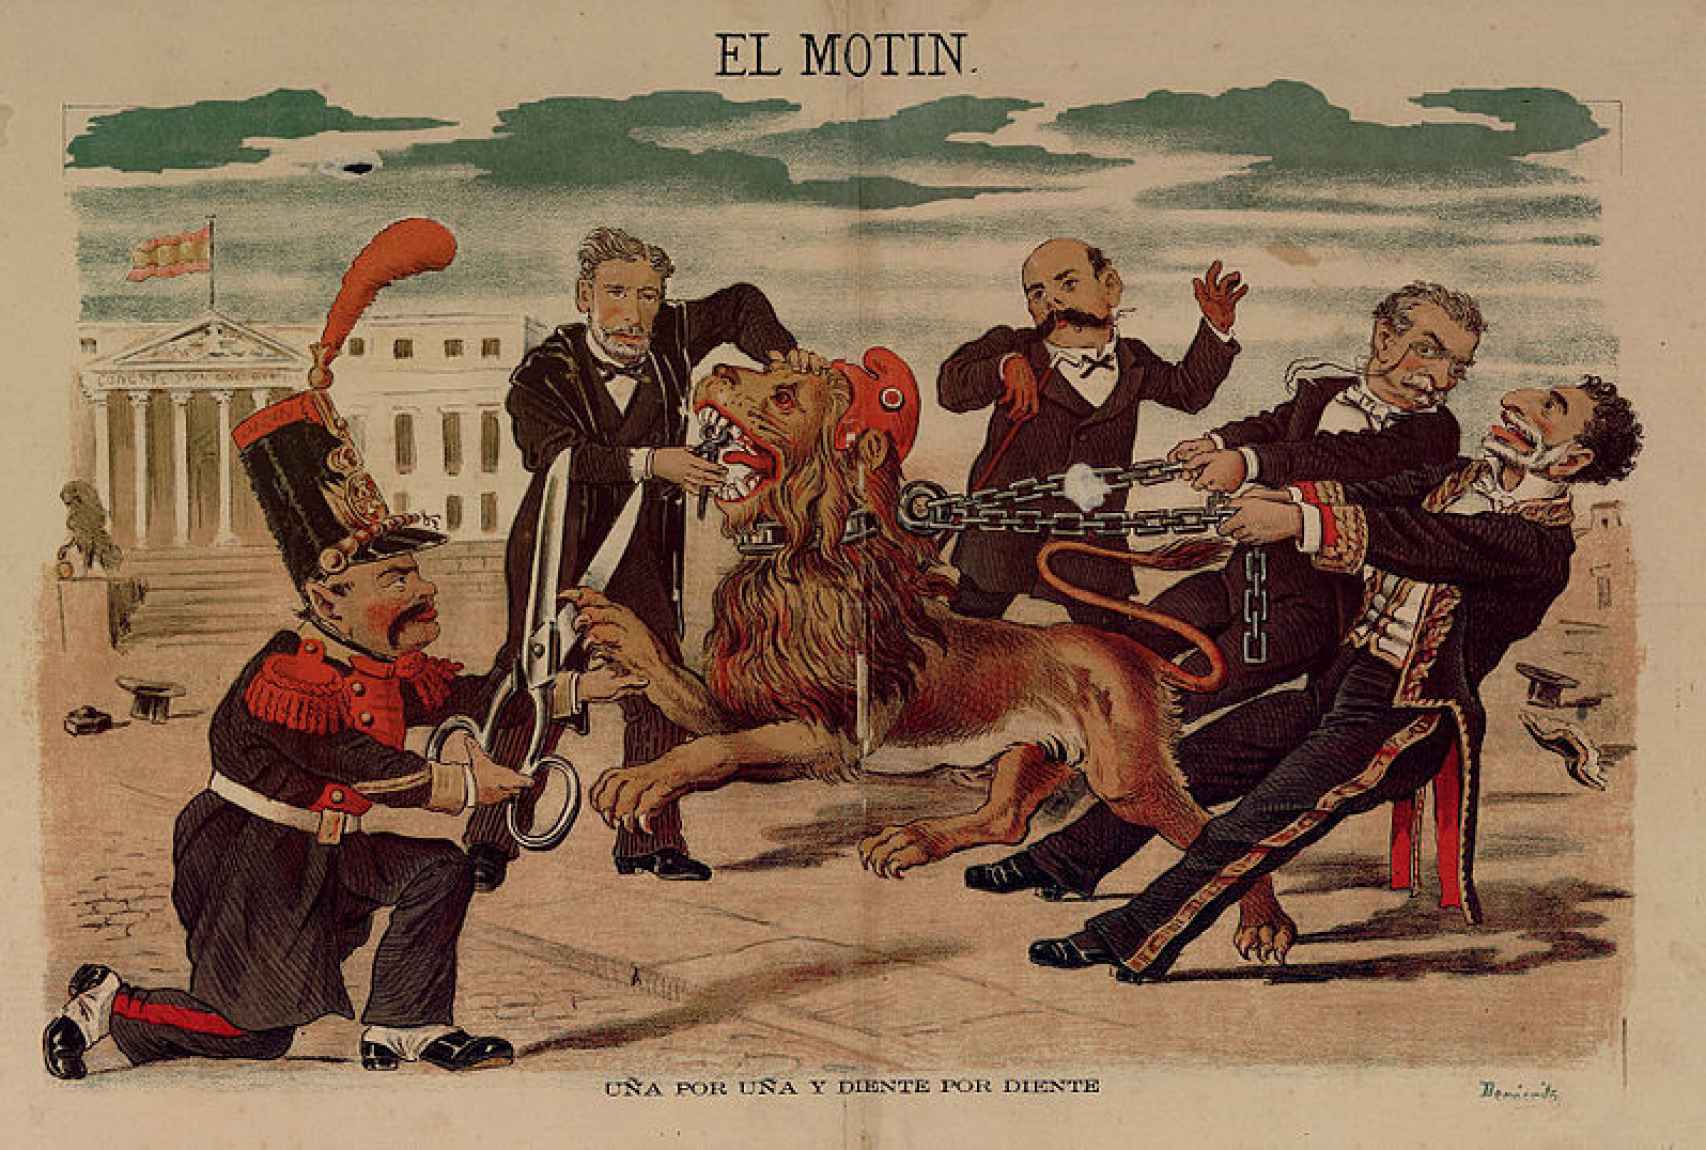 Caricatura de Eduardo Sojo en El Motín publicada el 16 de octubre de 1881. De izquierda a derecha: Becerra, Montero Ríos, Castelar, Cánovas y Sagasta